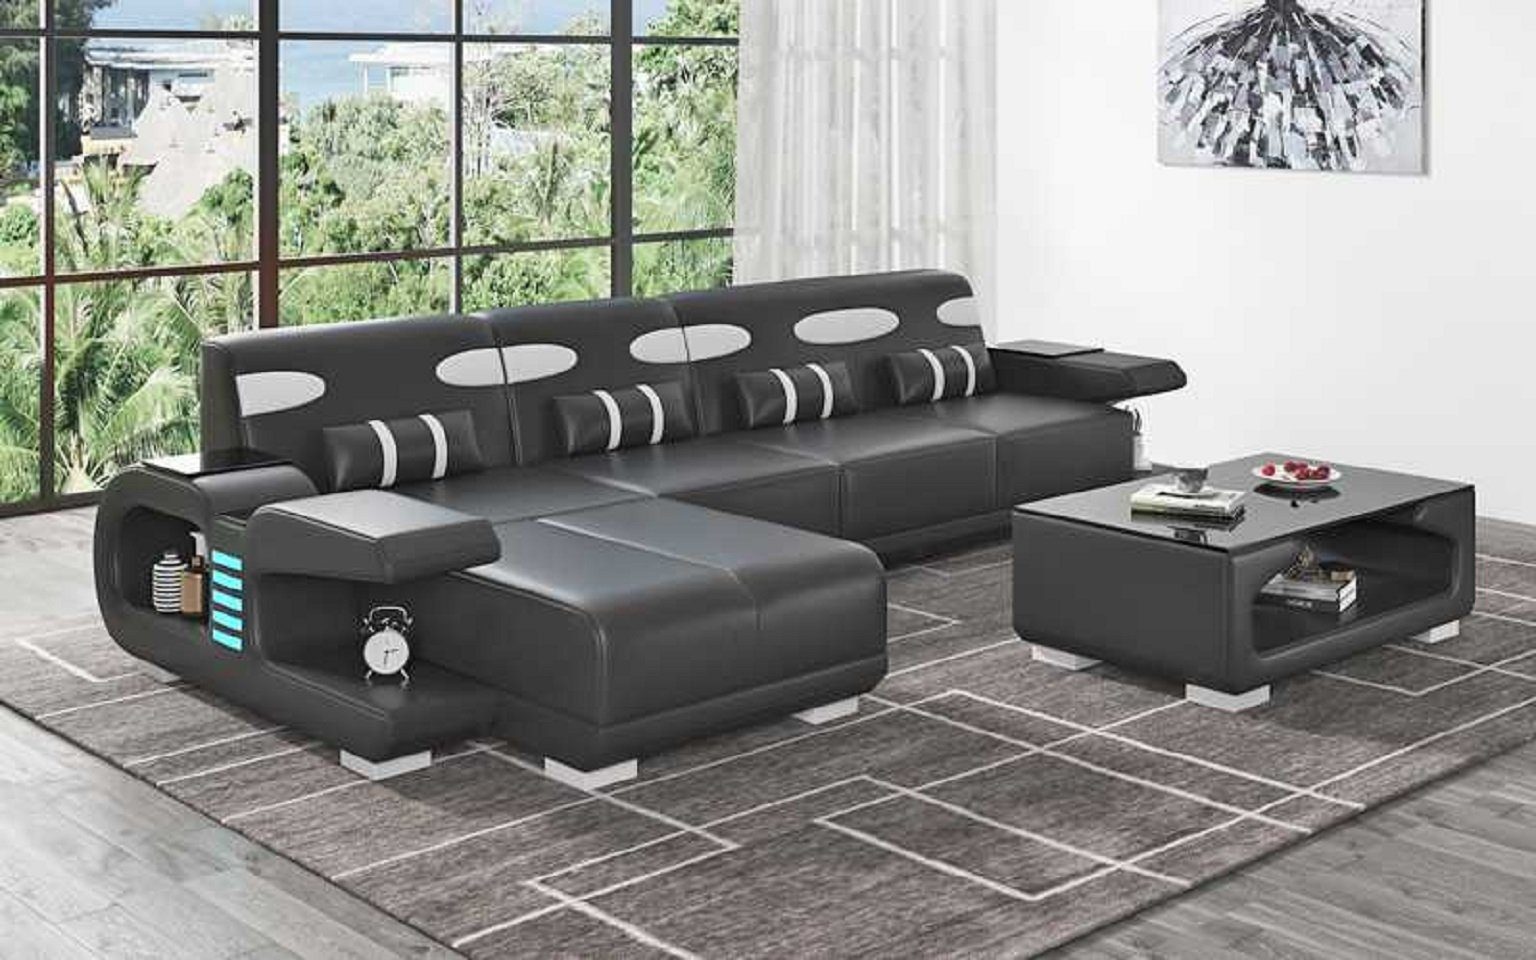 JVmoebel Ecksofa Design Ecksofa L Form Liege Modern Ledersofa Kunstleder Sofa Sofas, 3 Teile, Made in Europe Schwarz